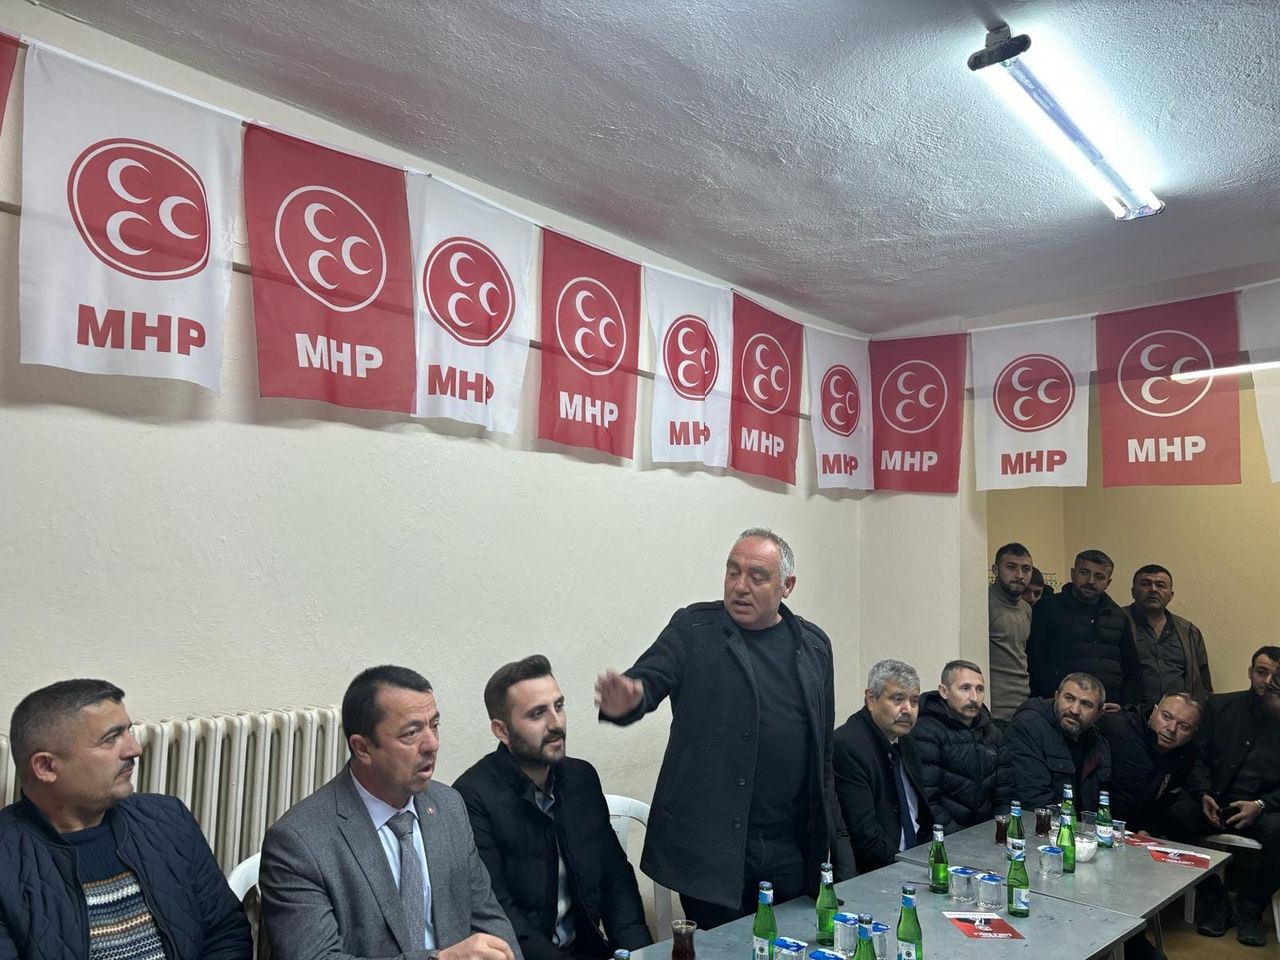 MHP Yöneticileri ve Adayları Bölge Halkıyla Buluştu